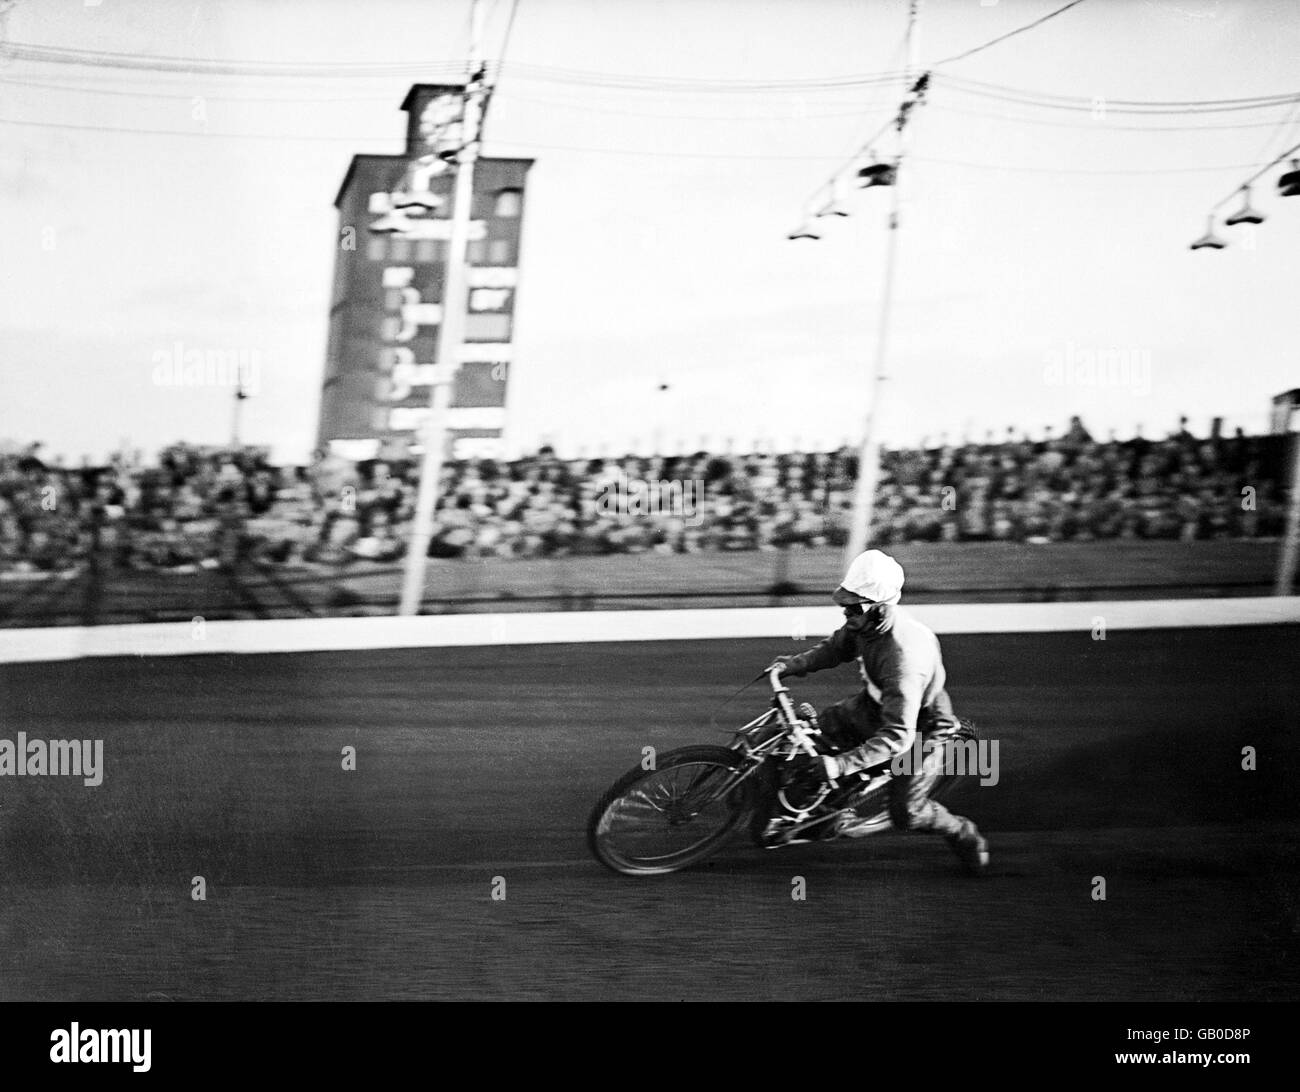 Speedway. Max Grosskreutz at speed Stock Photo